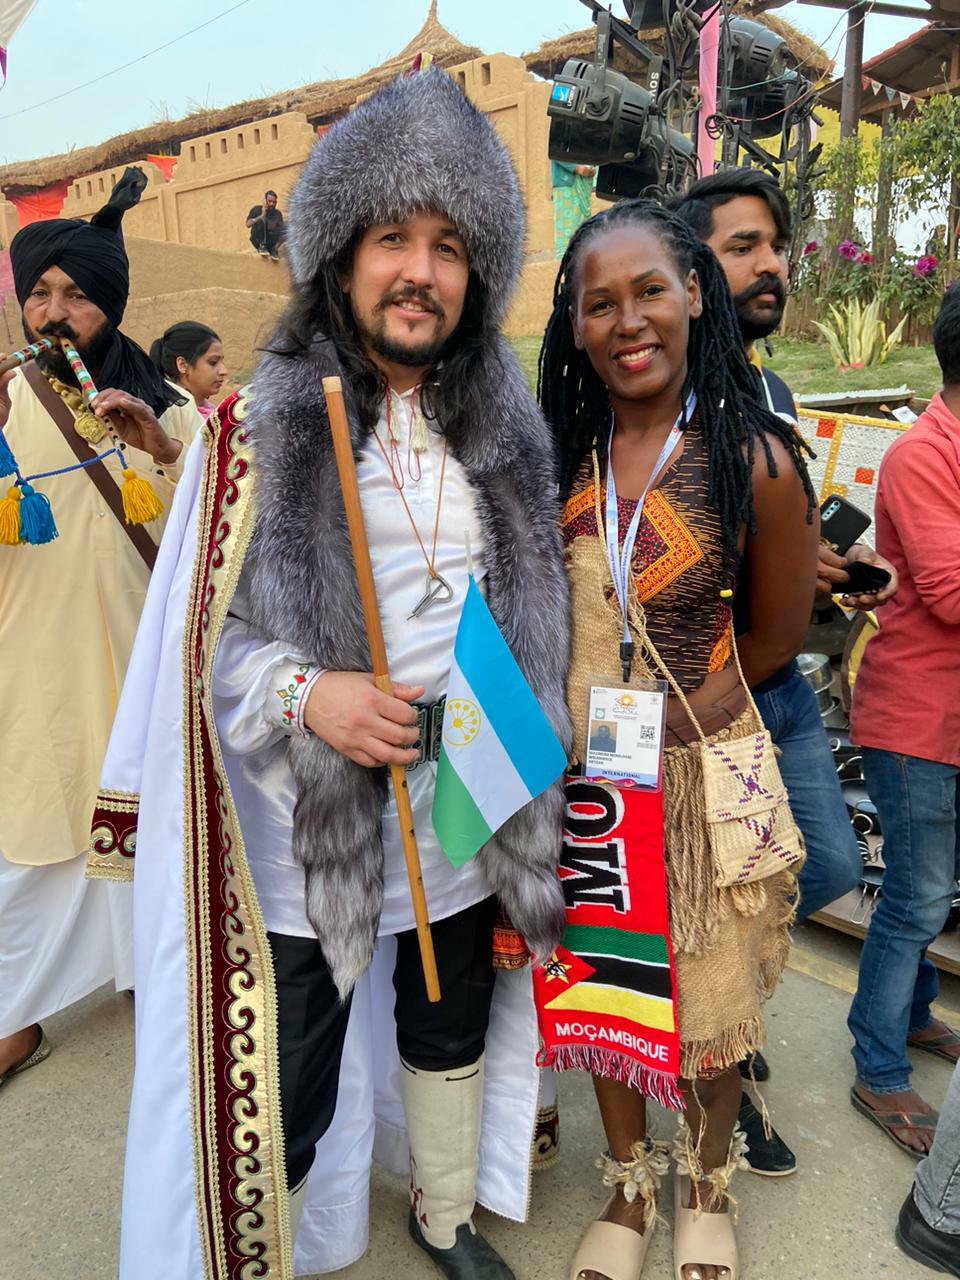 Башкирская делегация приняла участие в национальном параде Международного фестиваля в Индии